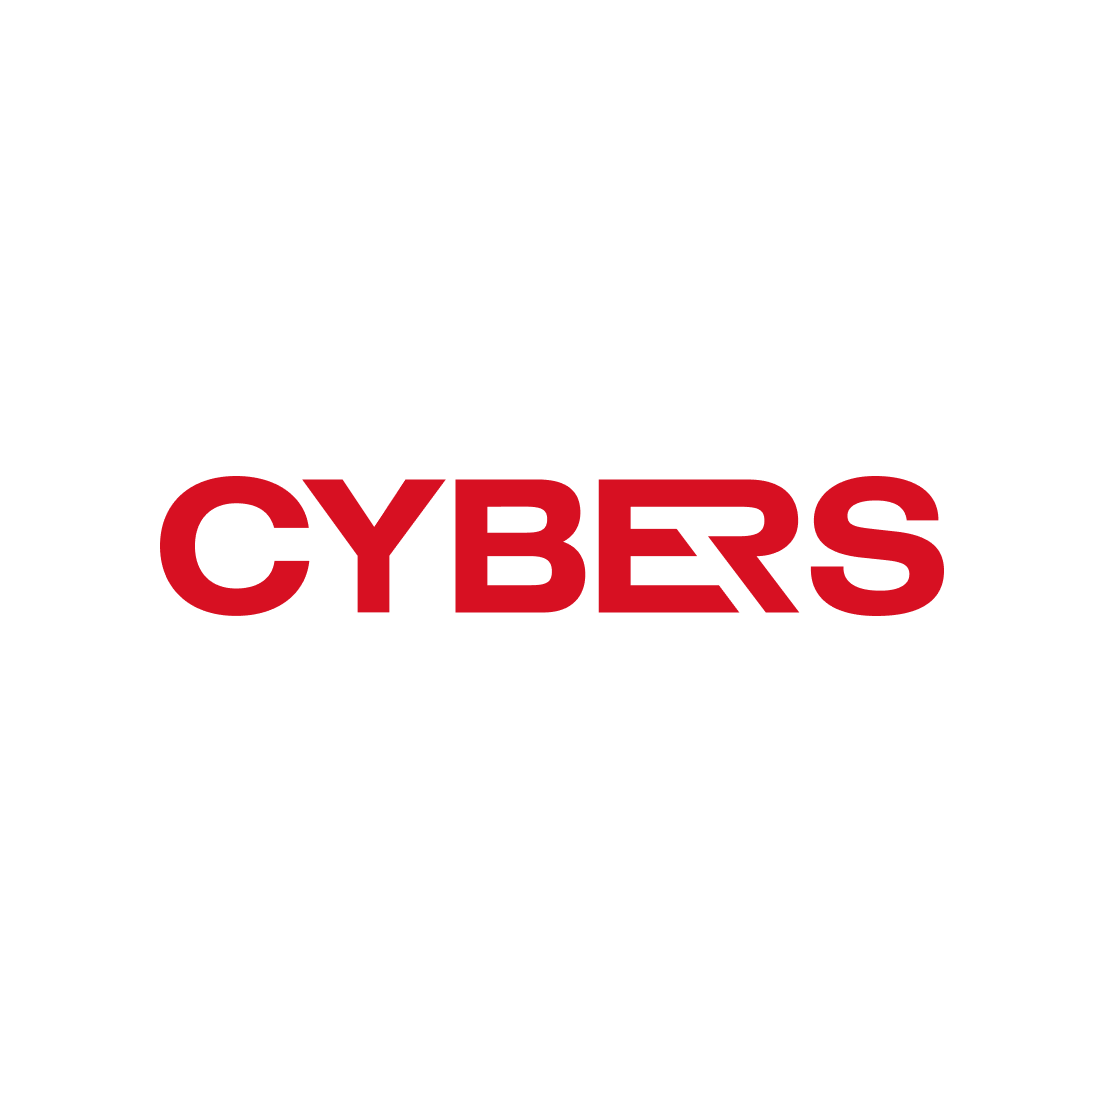 Cybers